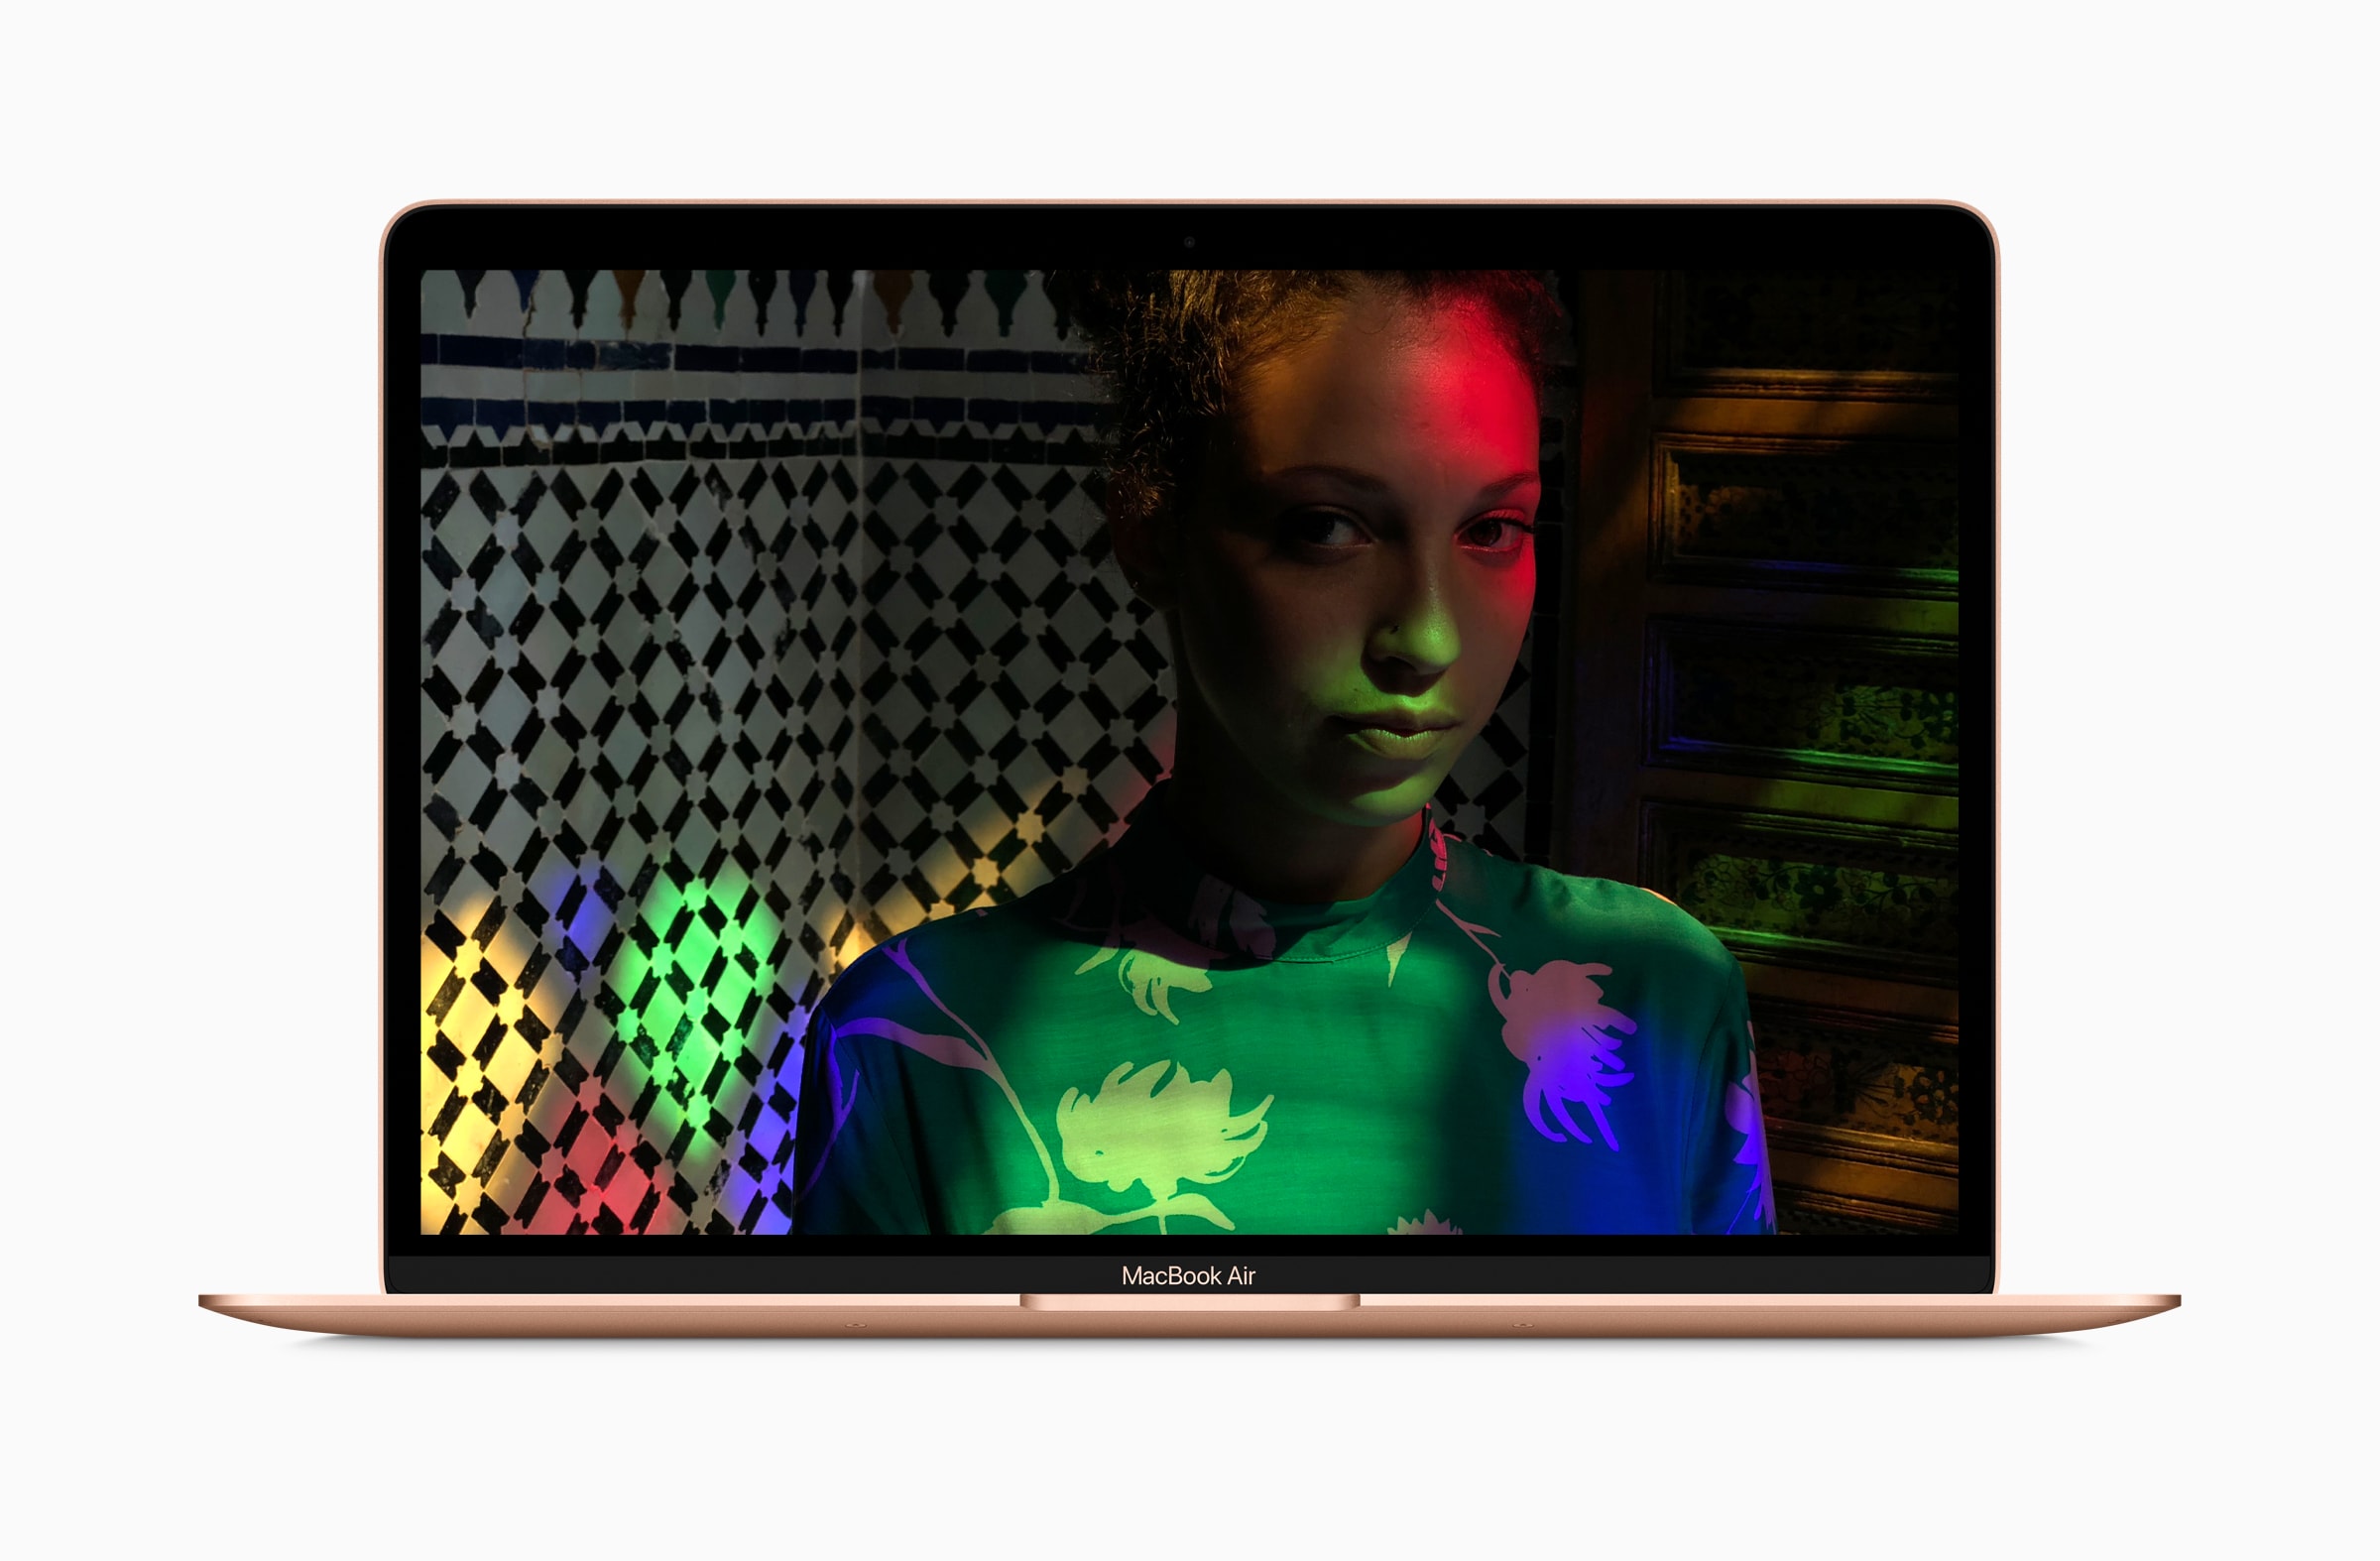 Tela Retina do novo MacBook Air